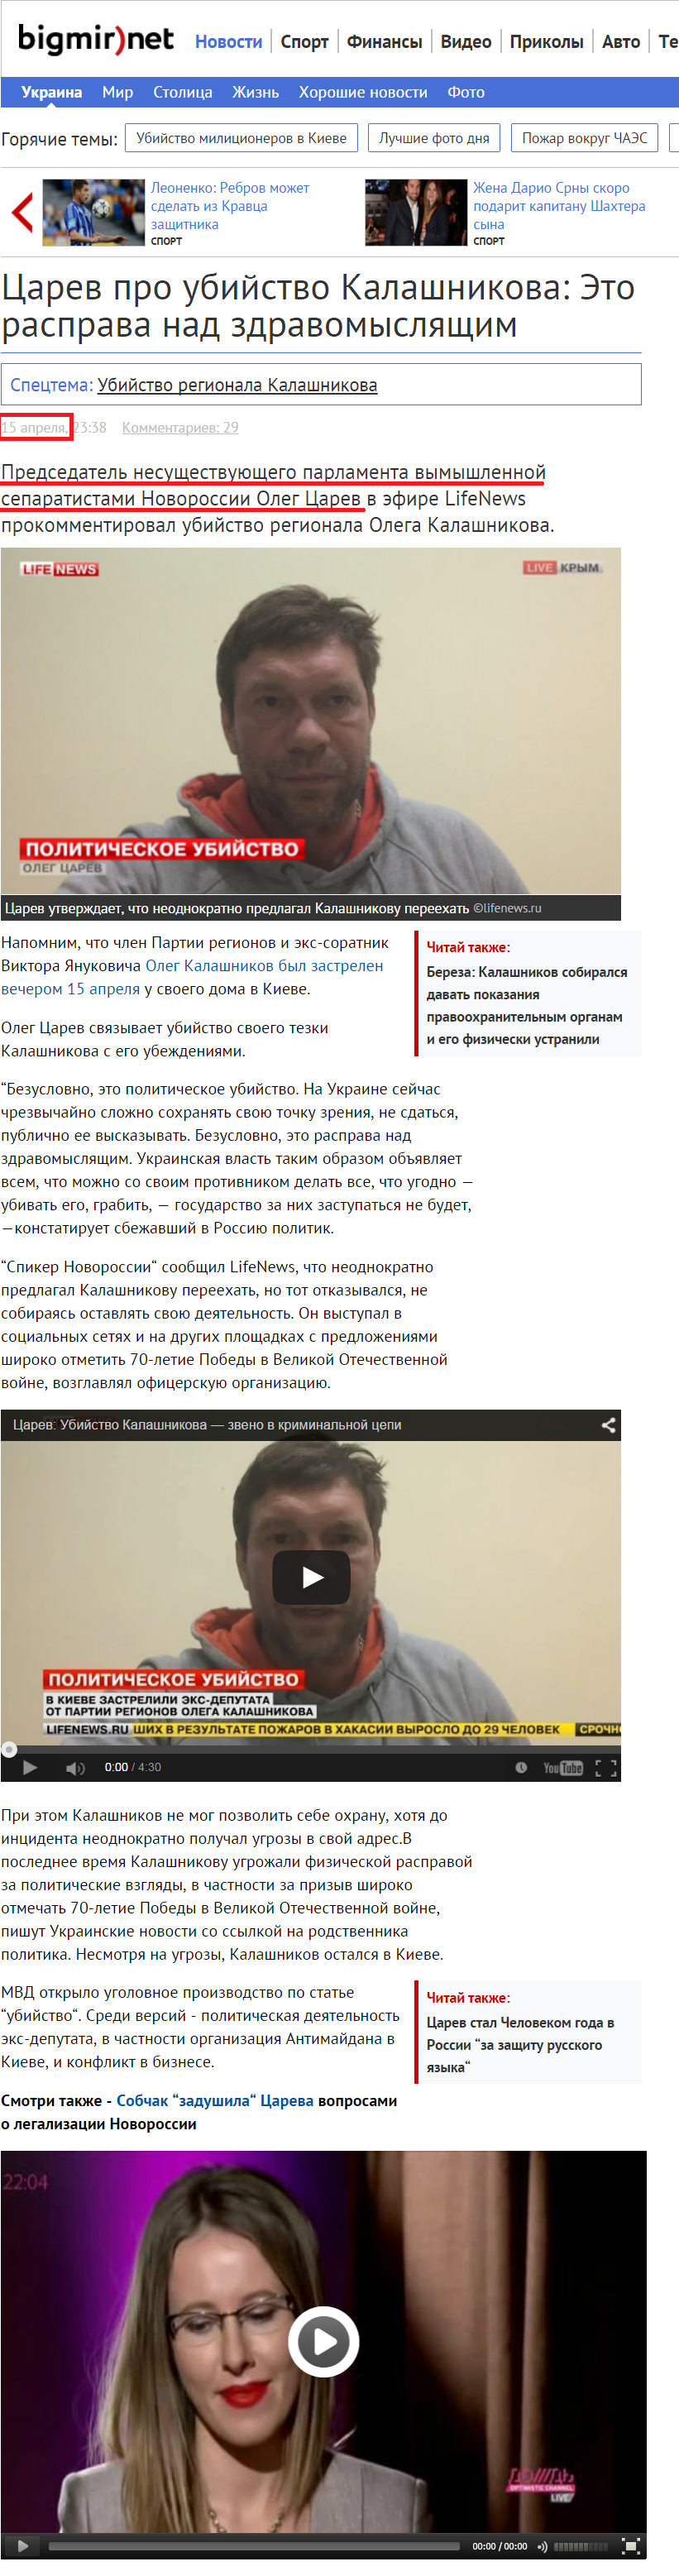 http://news.bigmir.net/ukraine/891591-Carev-pro-ubijstvo-Kalashnikova--Eto-rasprava-nad-zdravomysljacshim